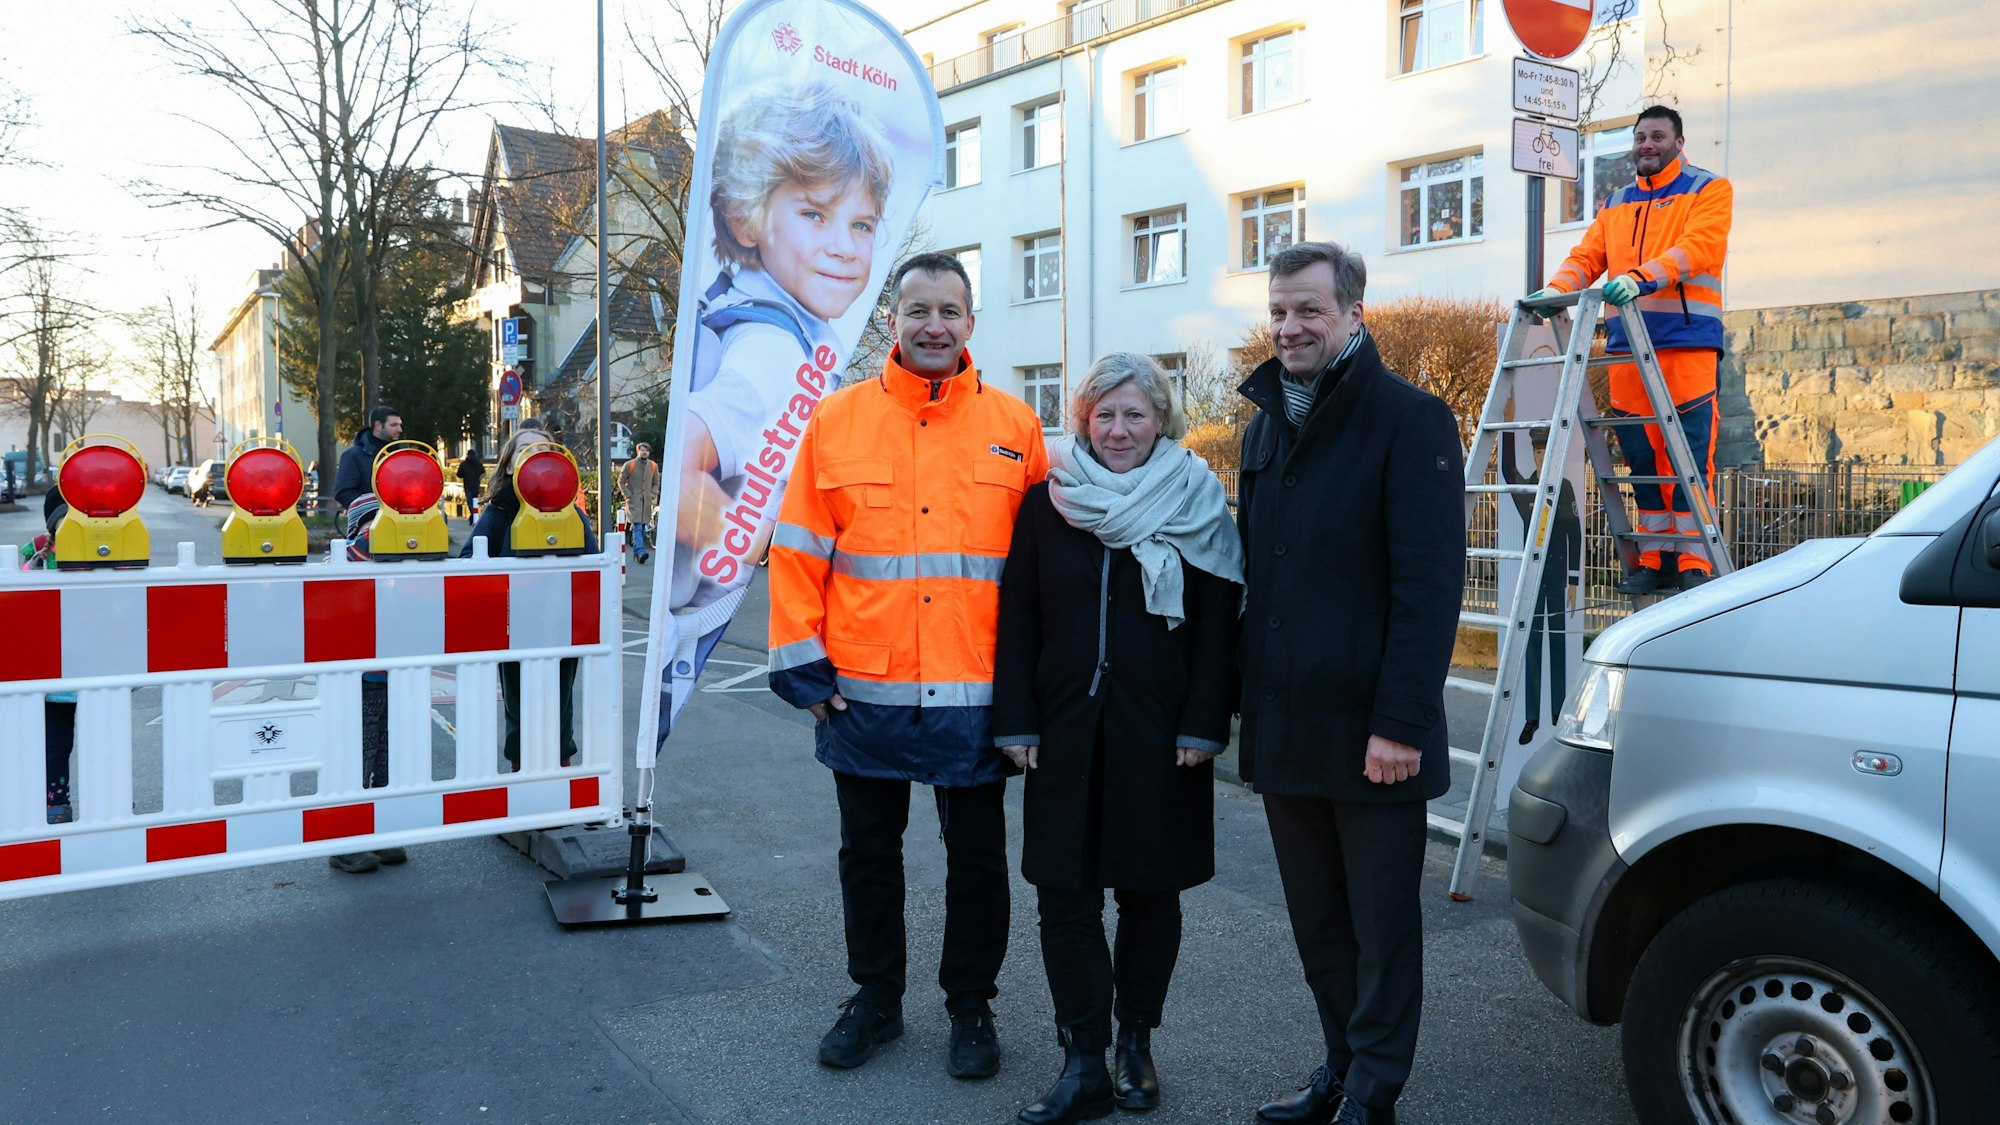 Patric Stieler, Karin Leusner und Ascan Egerer stehen neben der Bake, die die Straße absperrt. Im Hintergrund steht ein Mann auf einer Leiter neben einem Schild, das die Zufahrt verbietet.